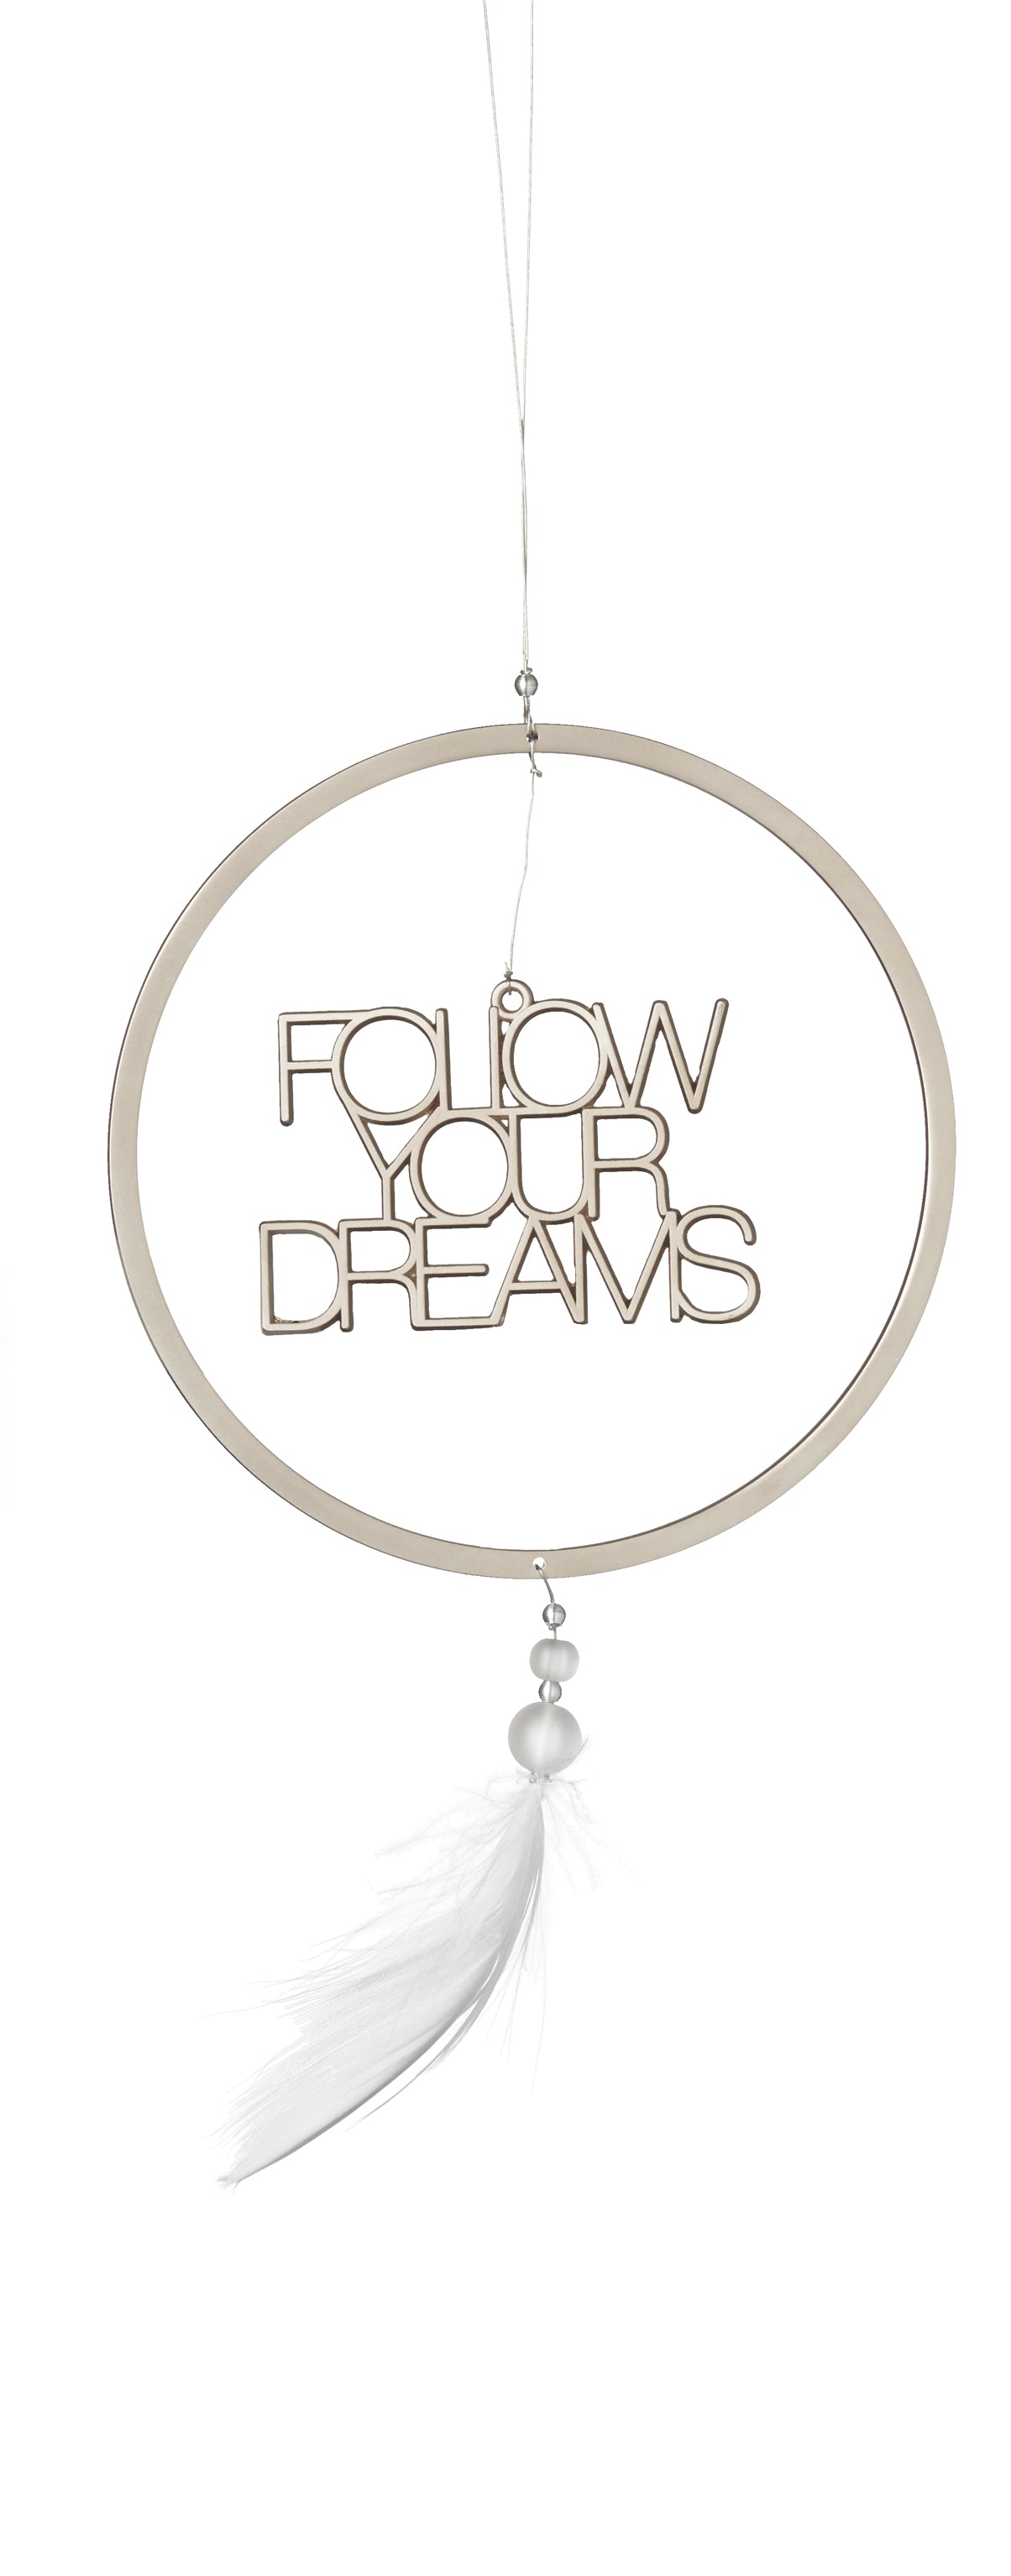 Dromenvanger "Follow your dreams" - Räder